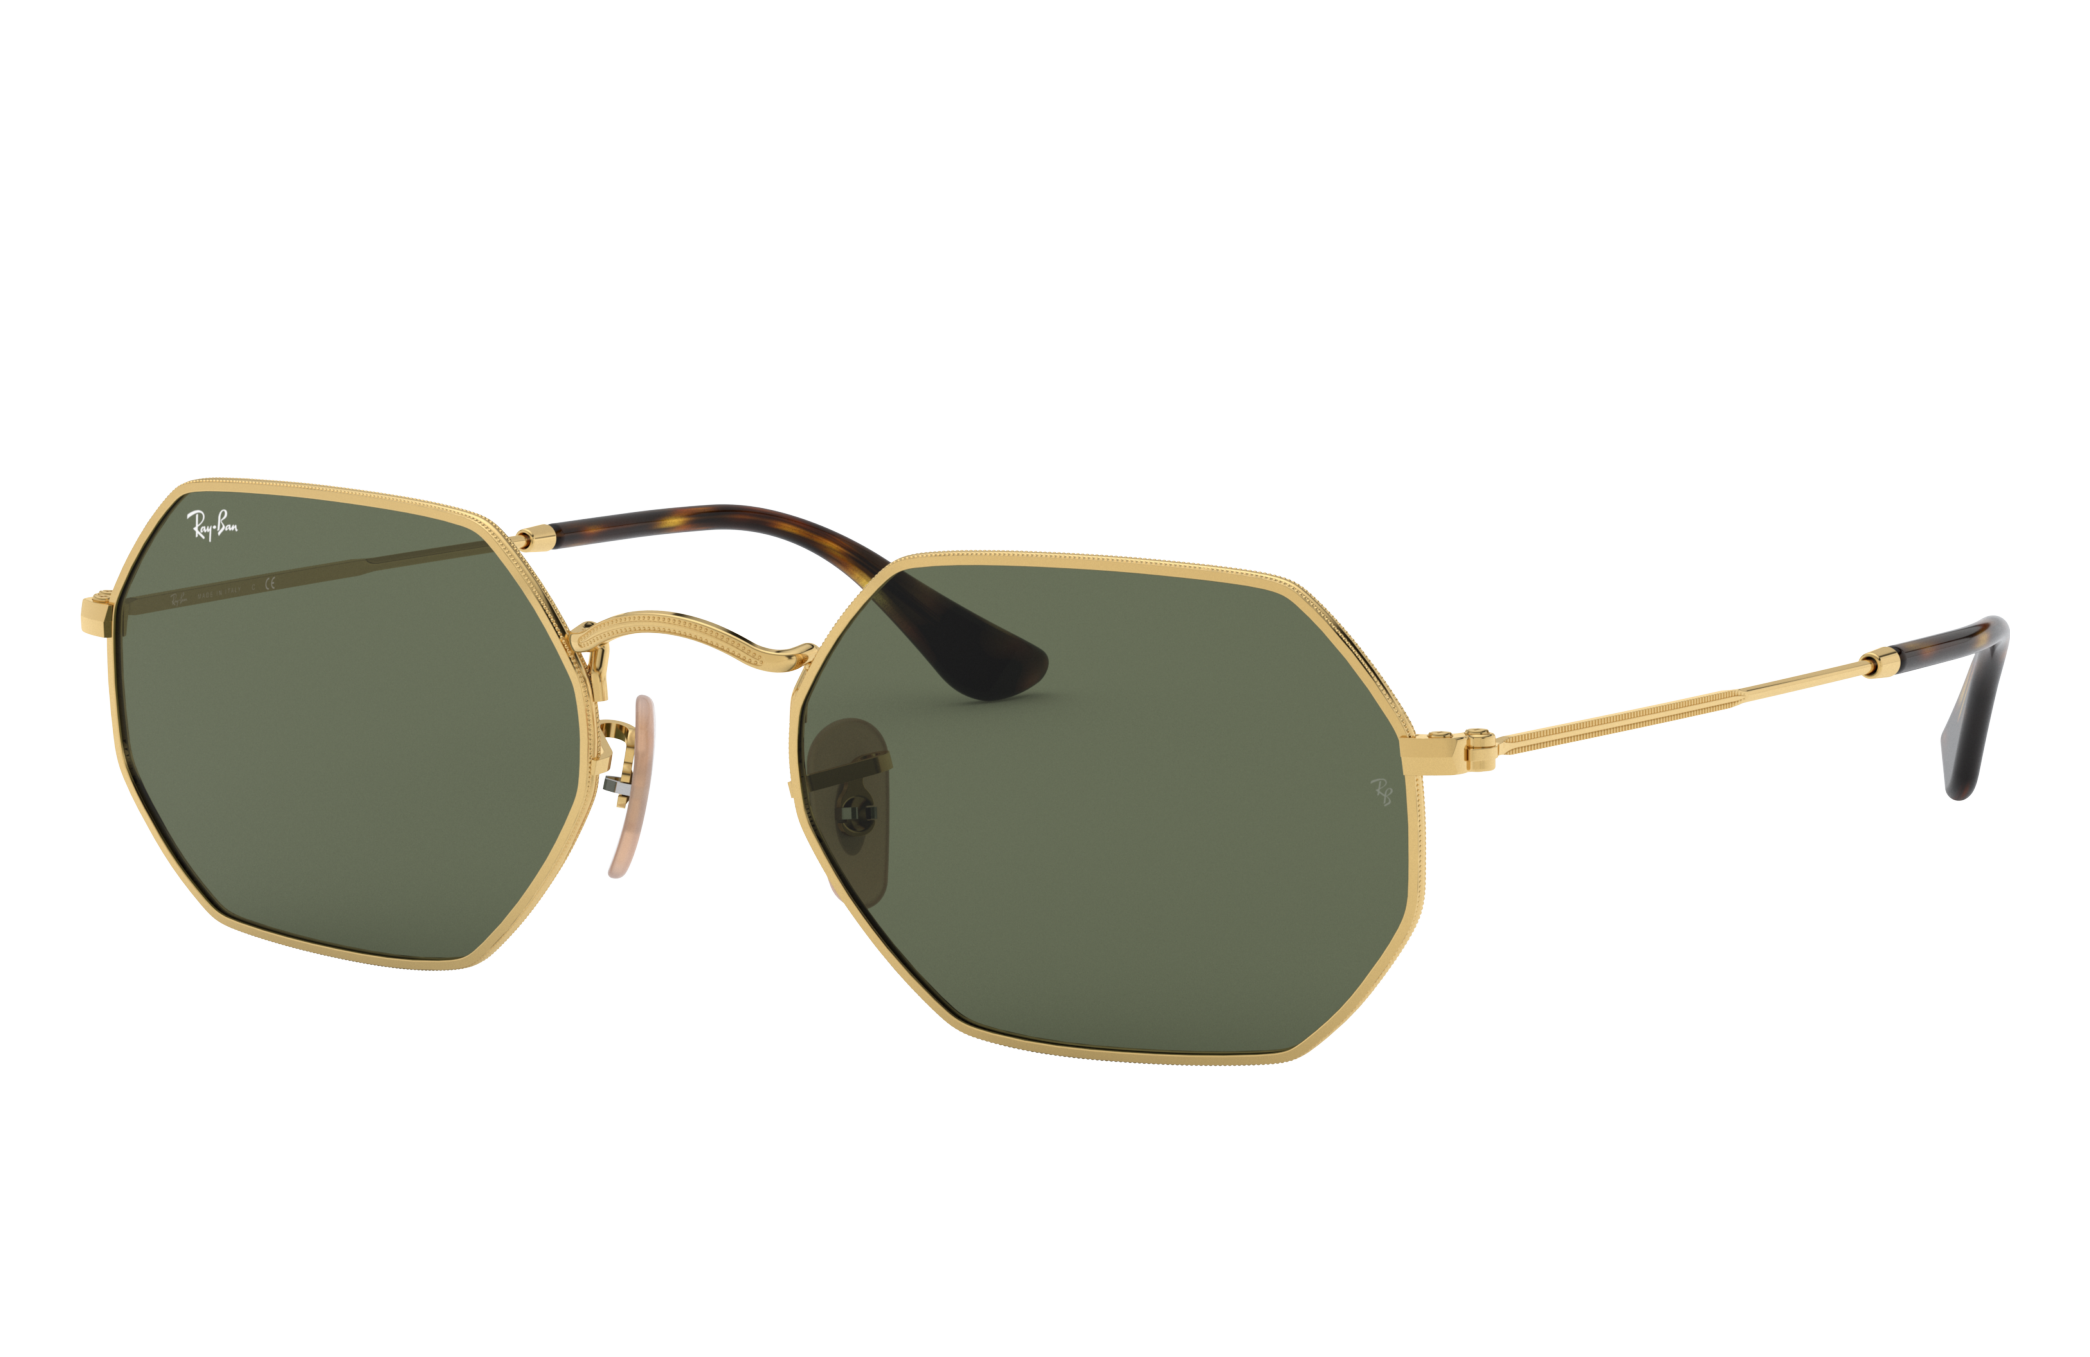 Polarized Sunglasses Women Oculos Ray Lunette Sunglases Ladies Women's Accessori 